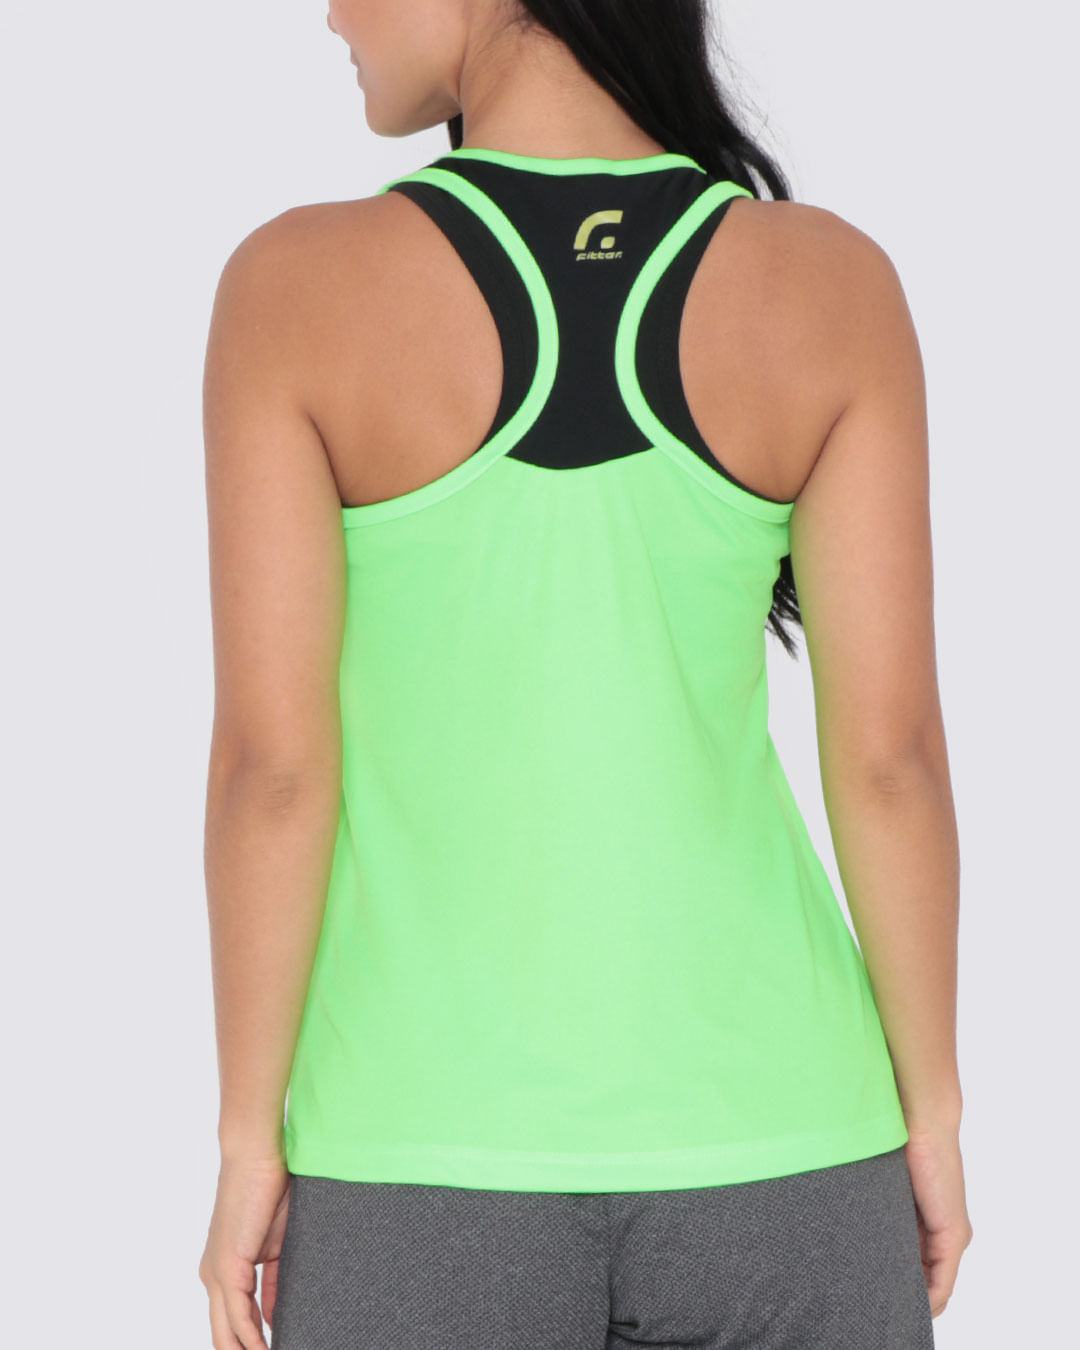 Regata-Feminina-Fitness-Nadador-Fitter-Verde-Neon